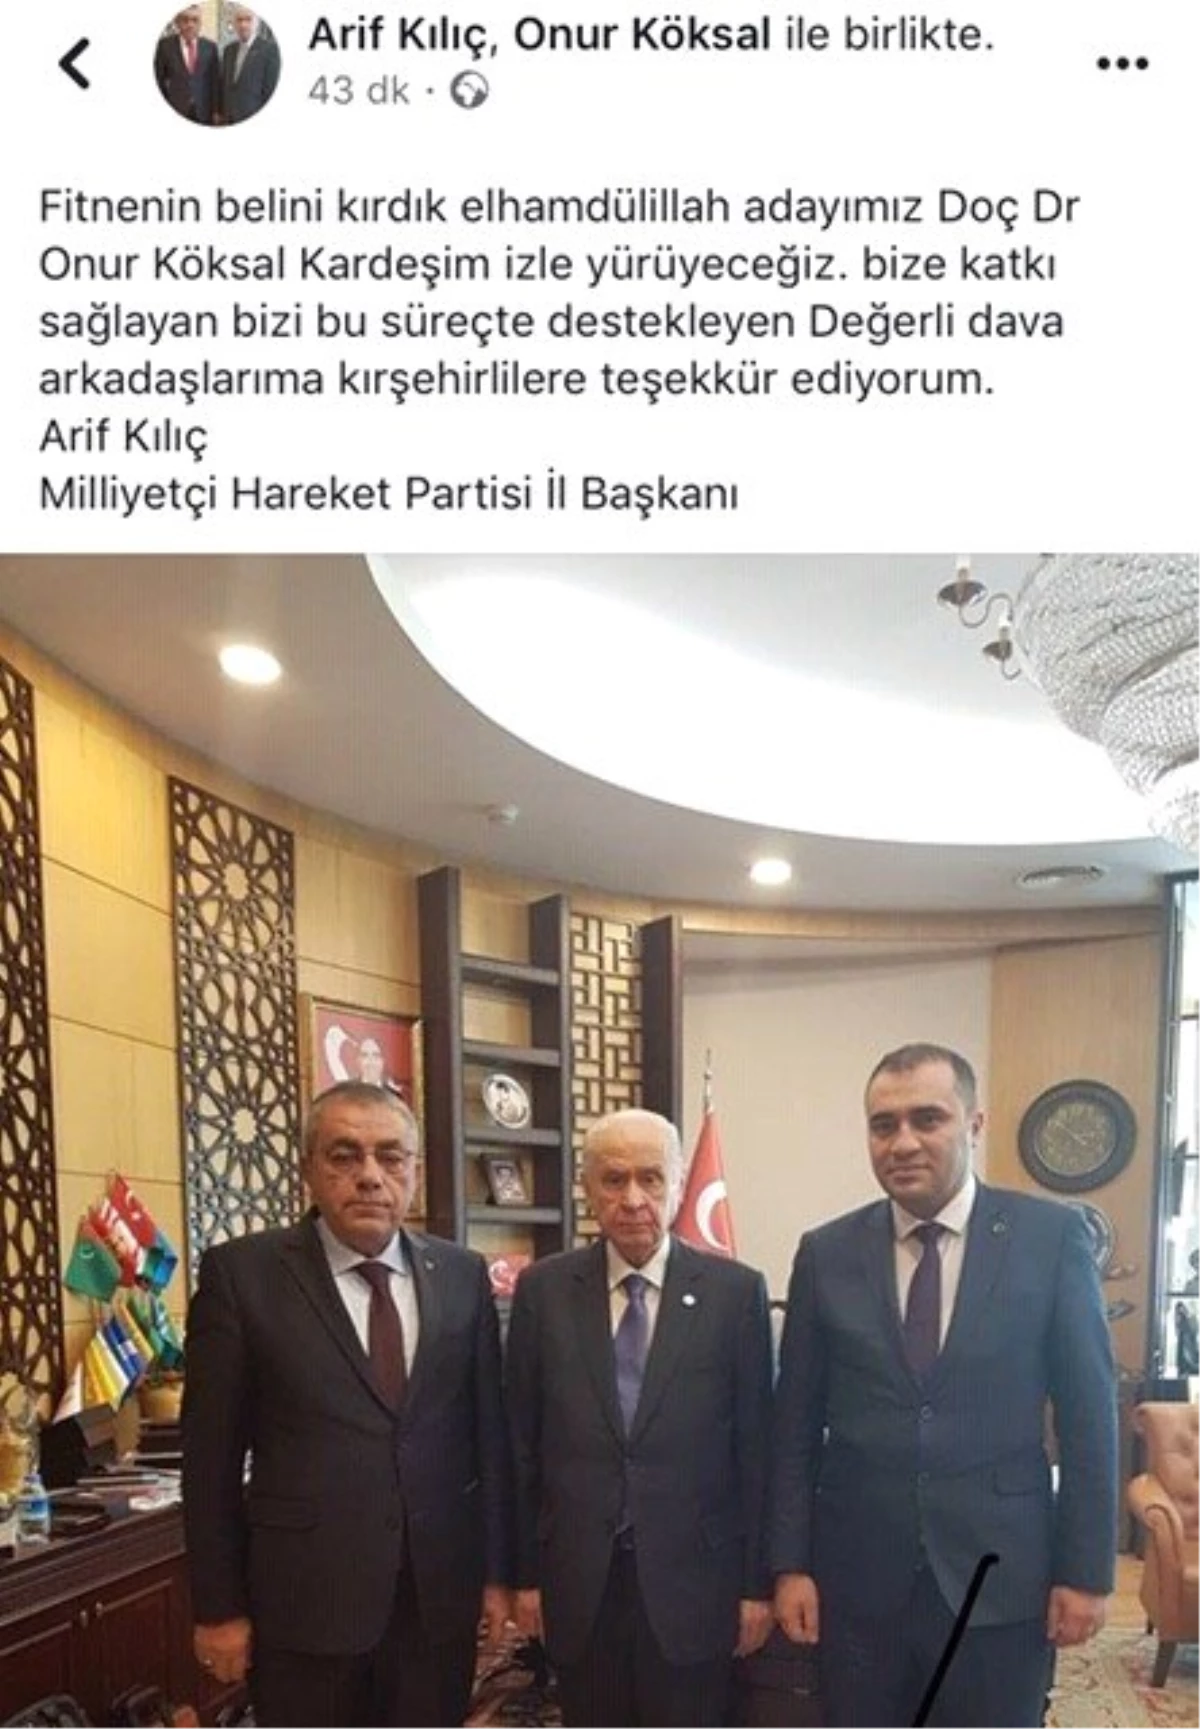 MHP İl Başkanı Arif Kılıç ; "Fitnenin Belini Kırdık Adayımız Onur Köksal"